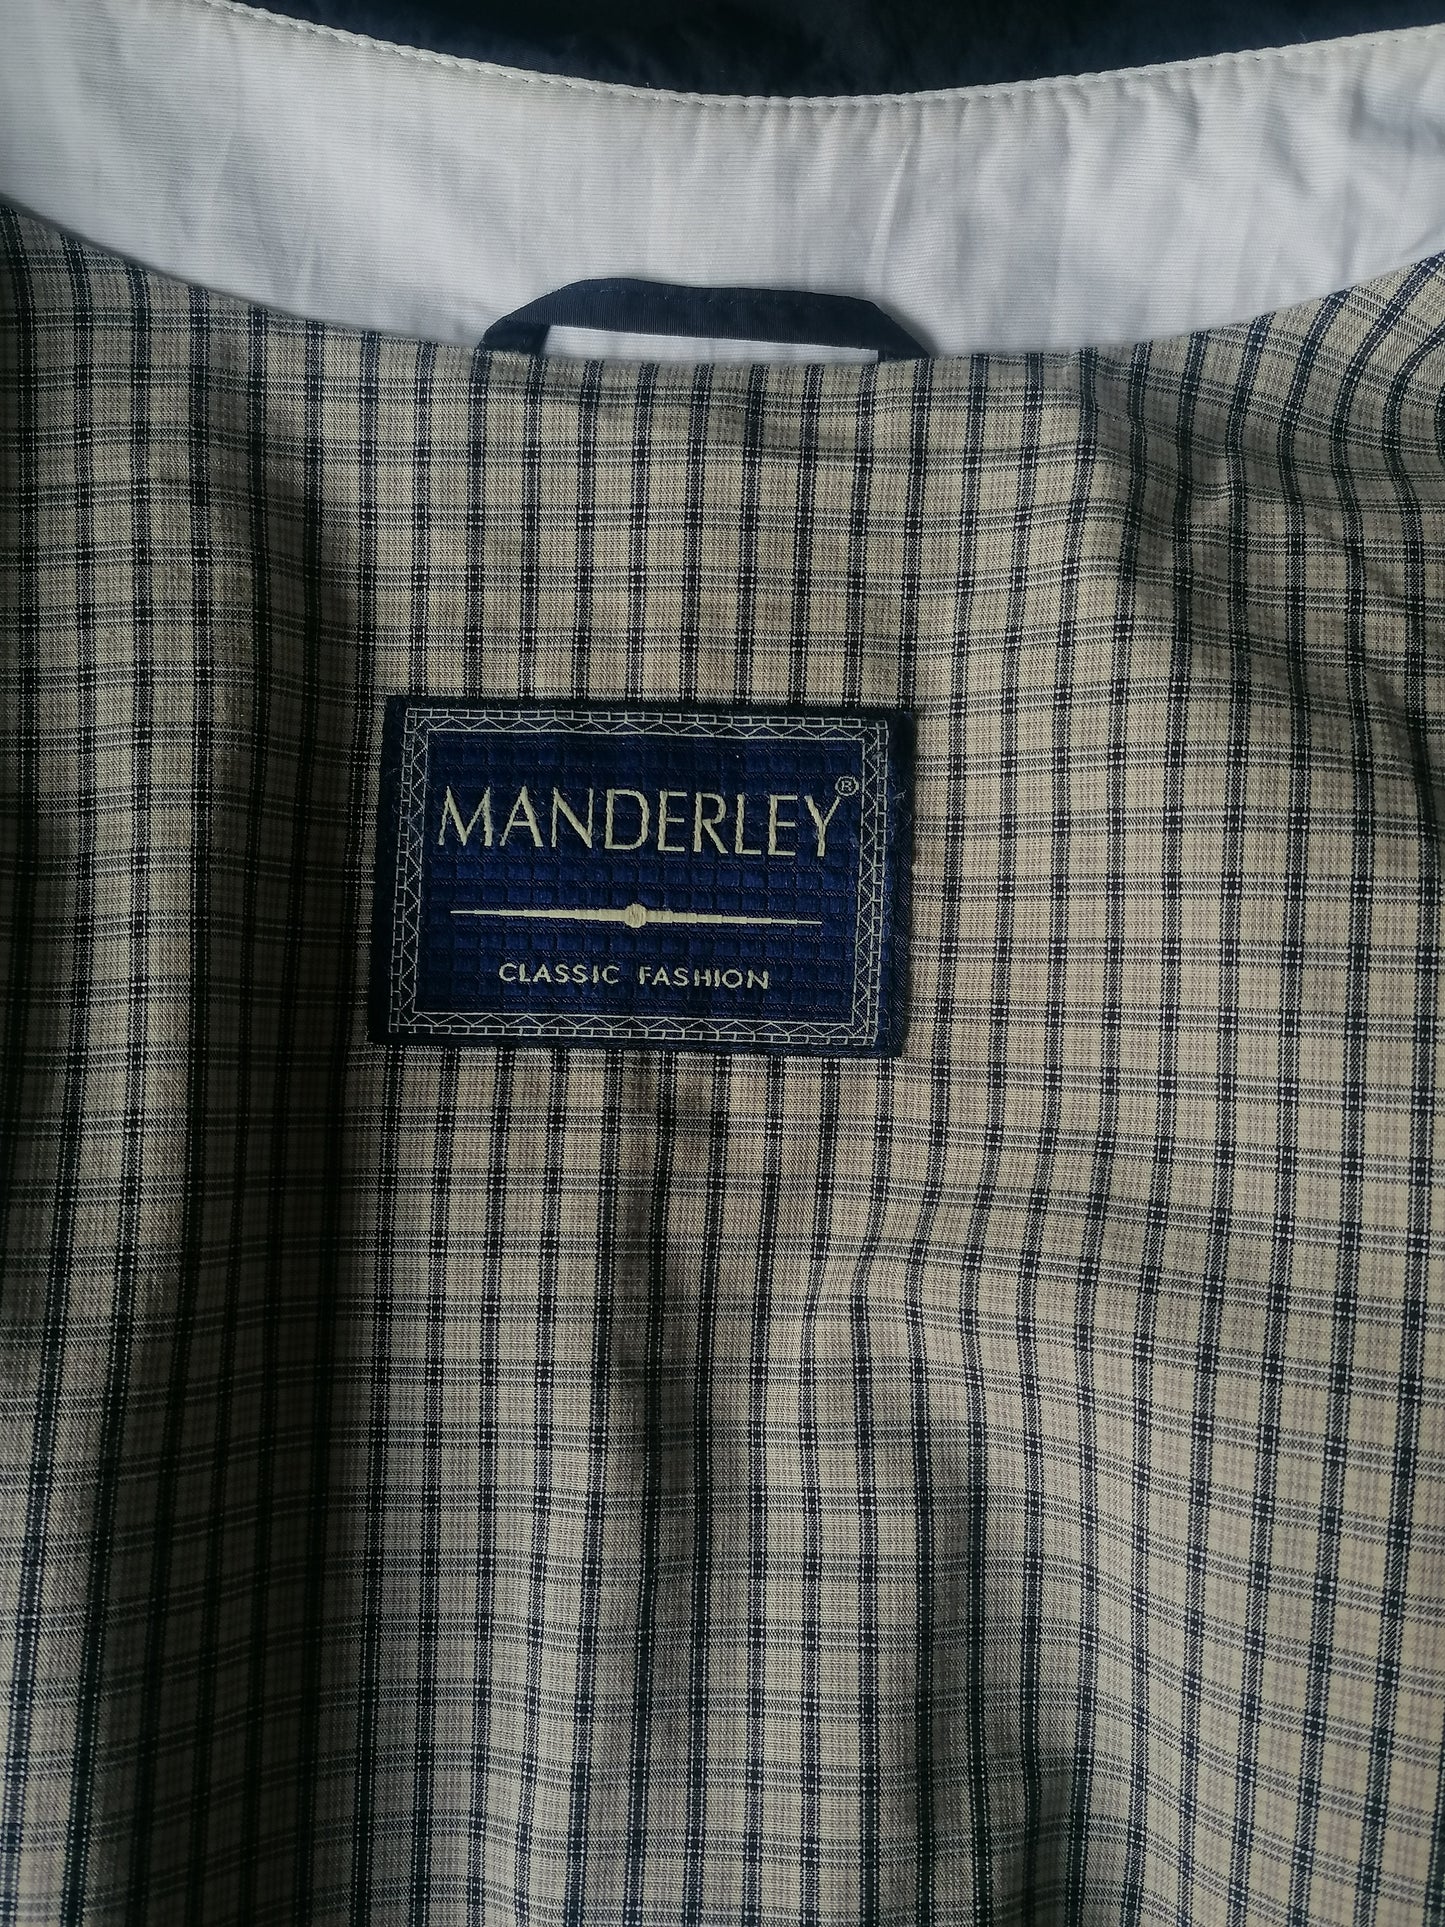 Manderley Mantel / Chaqueta de media longitud. Color azul oscuro. Tamaño 98 / xl. (58/60)